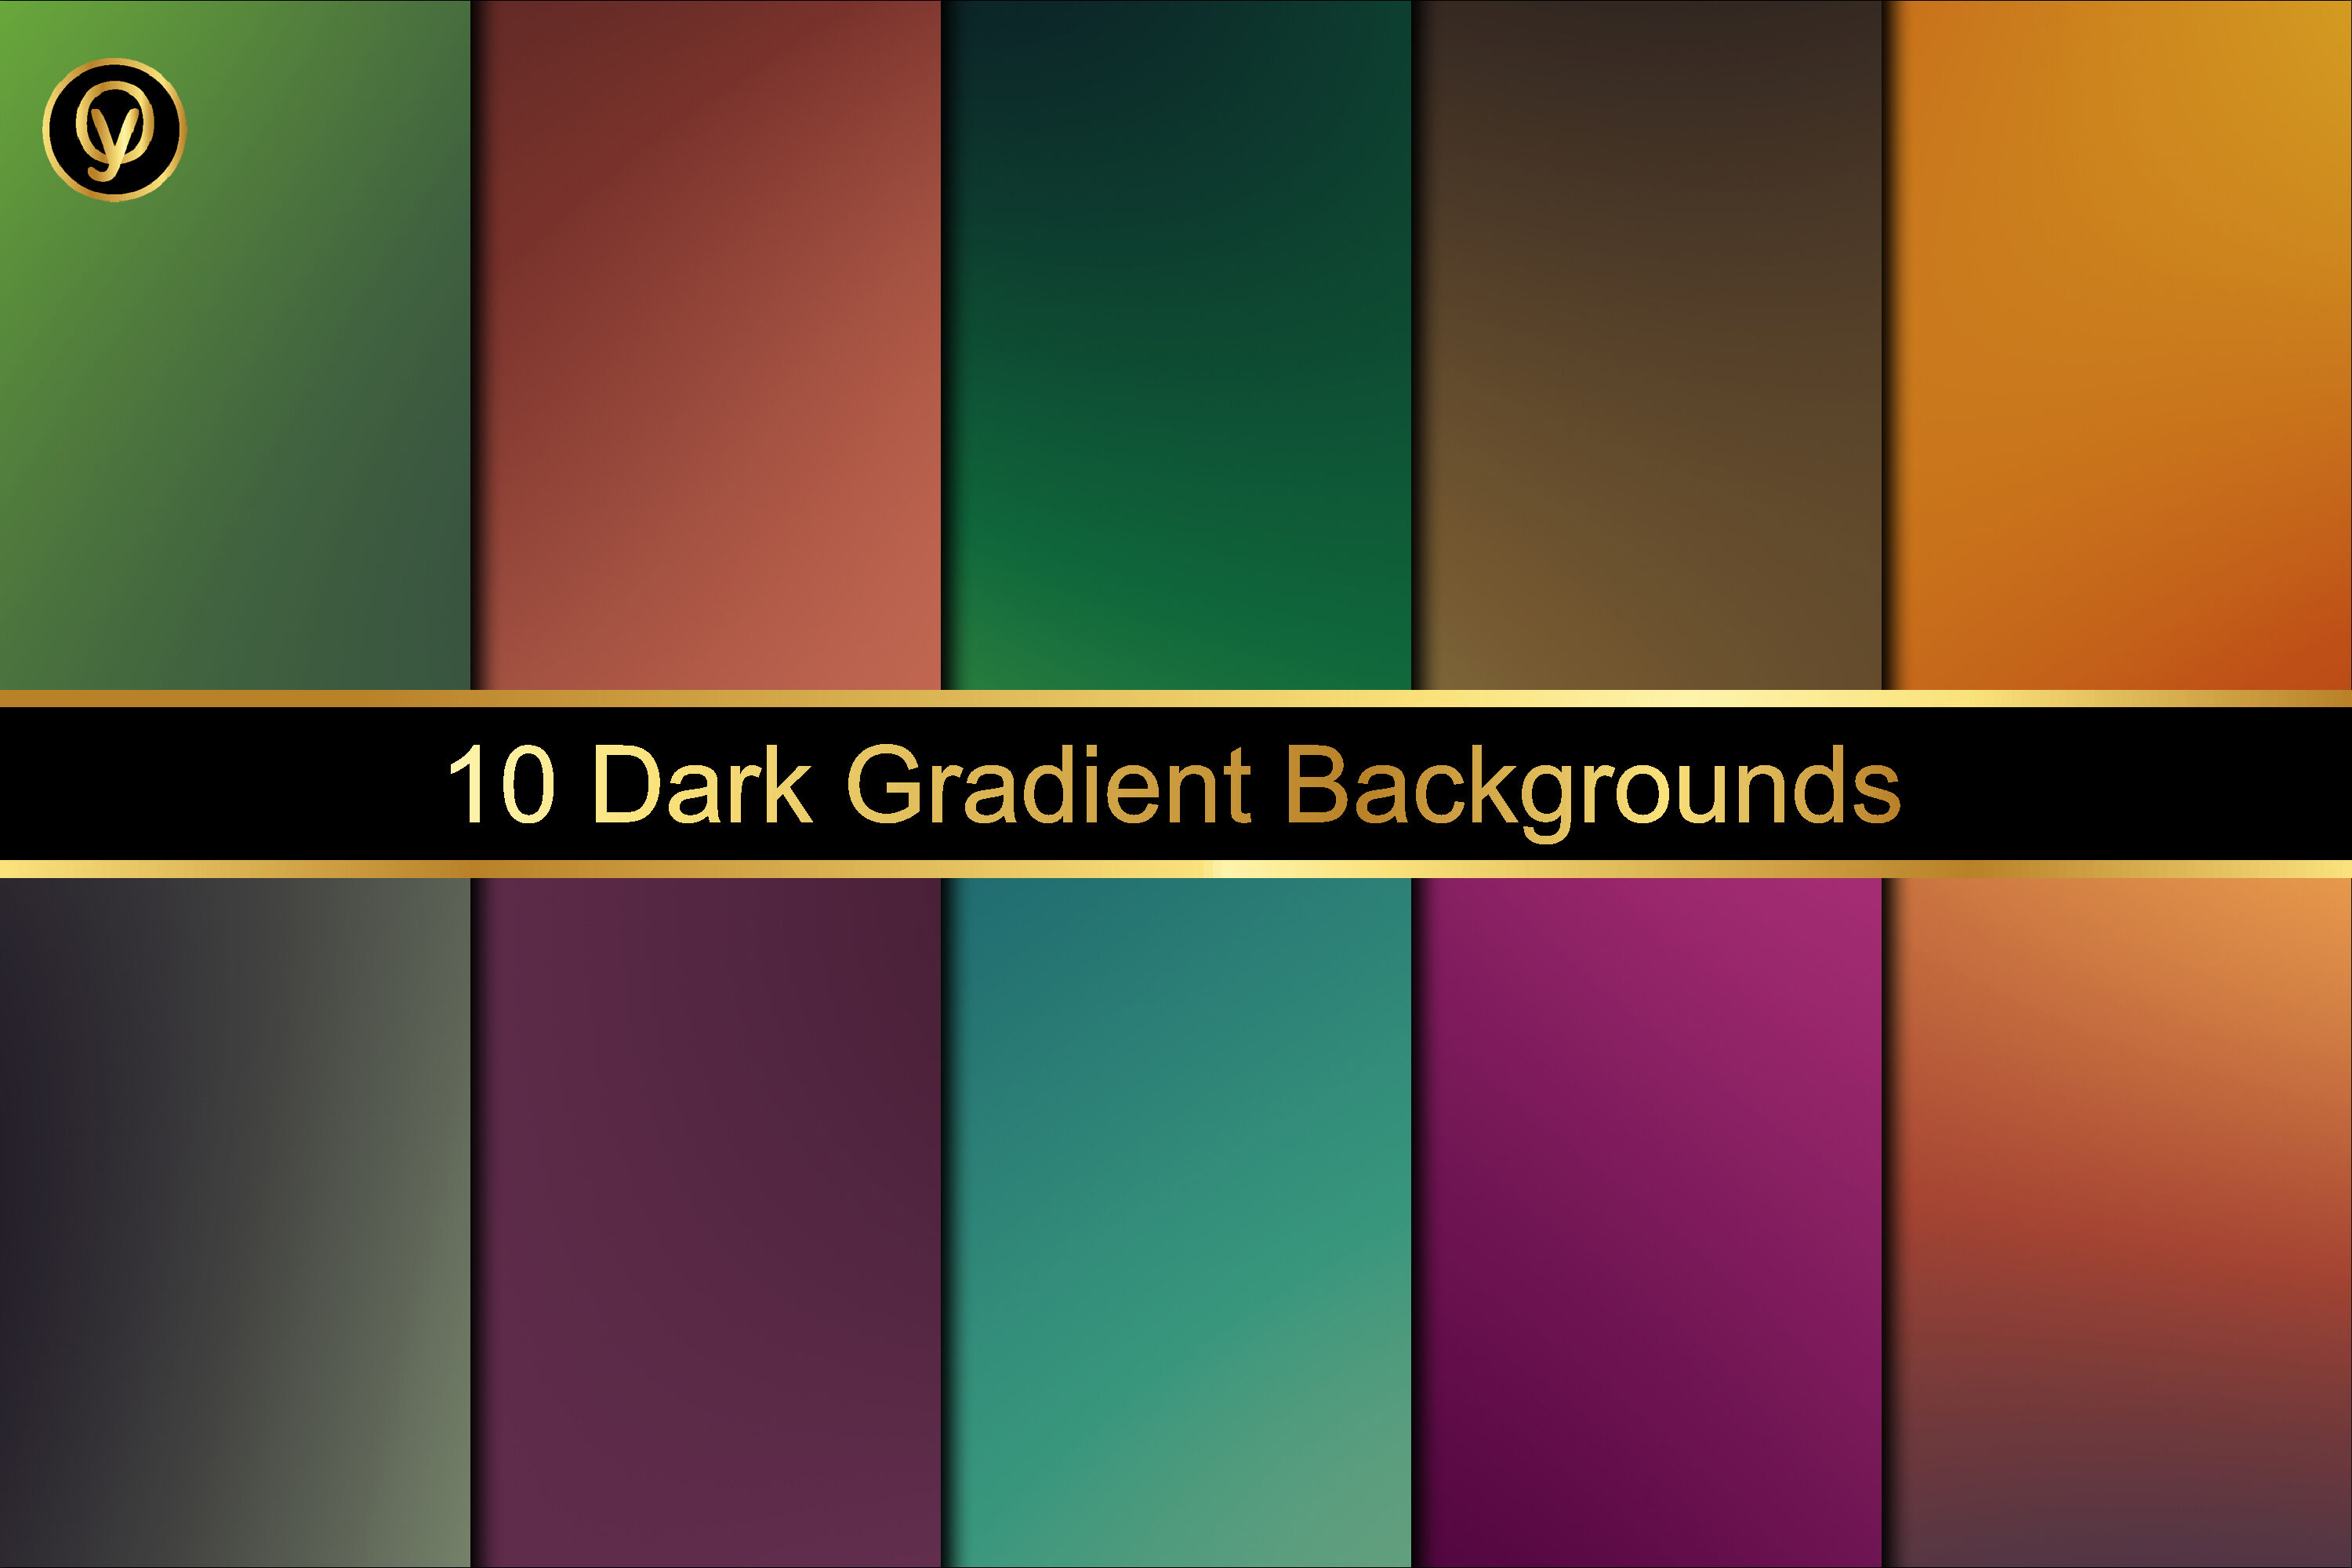 Dark Gradient Backgrounds